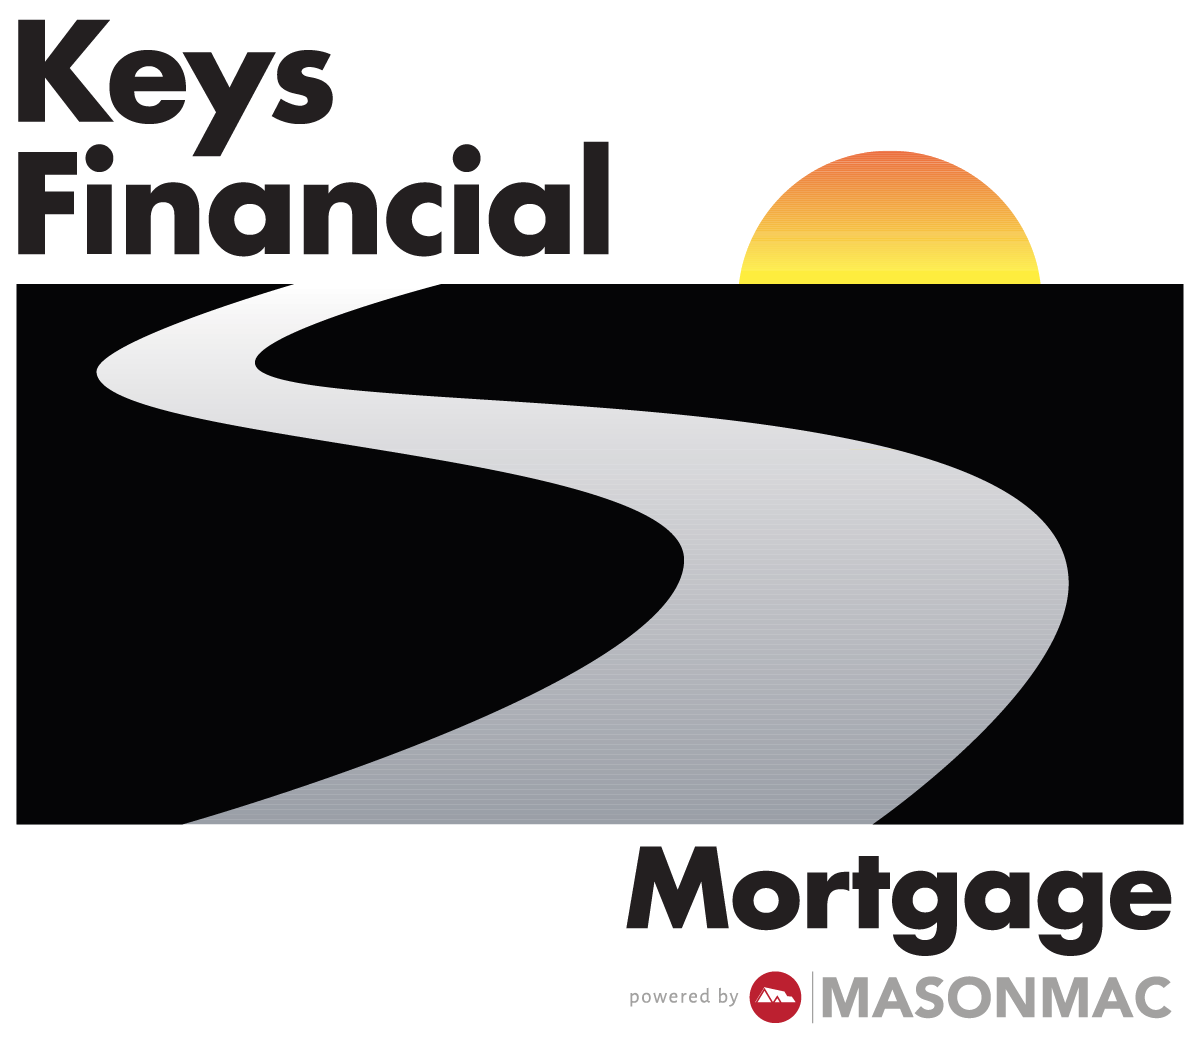 Keys Financial Mortgage 